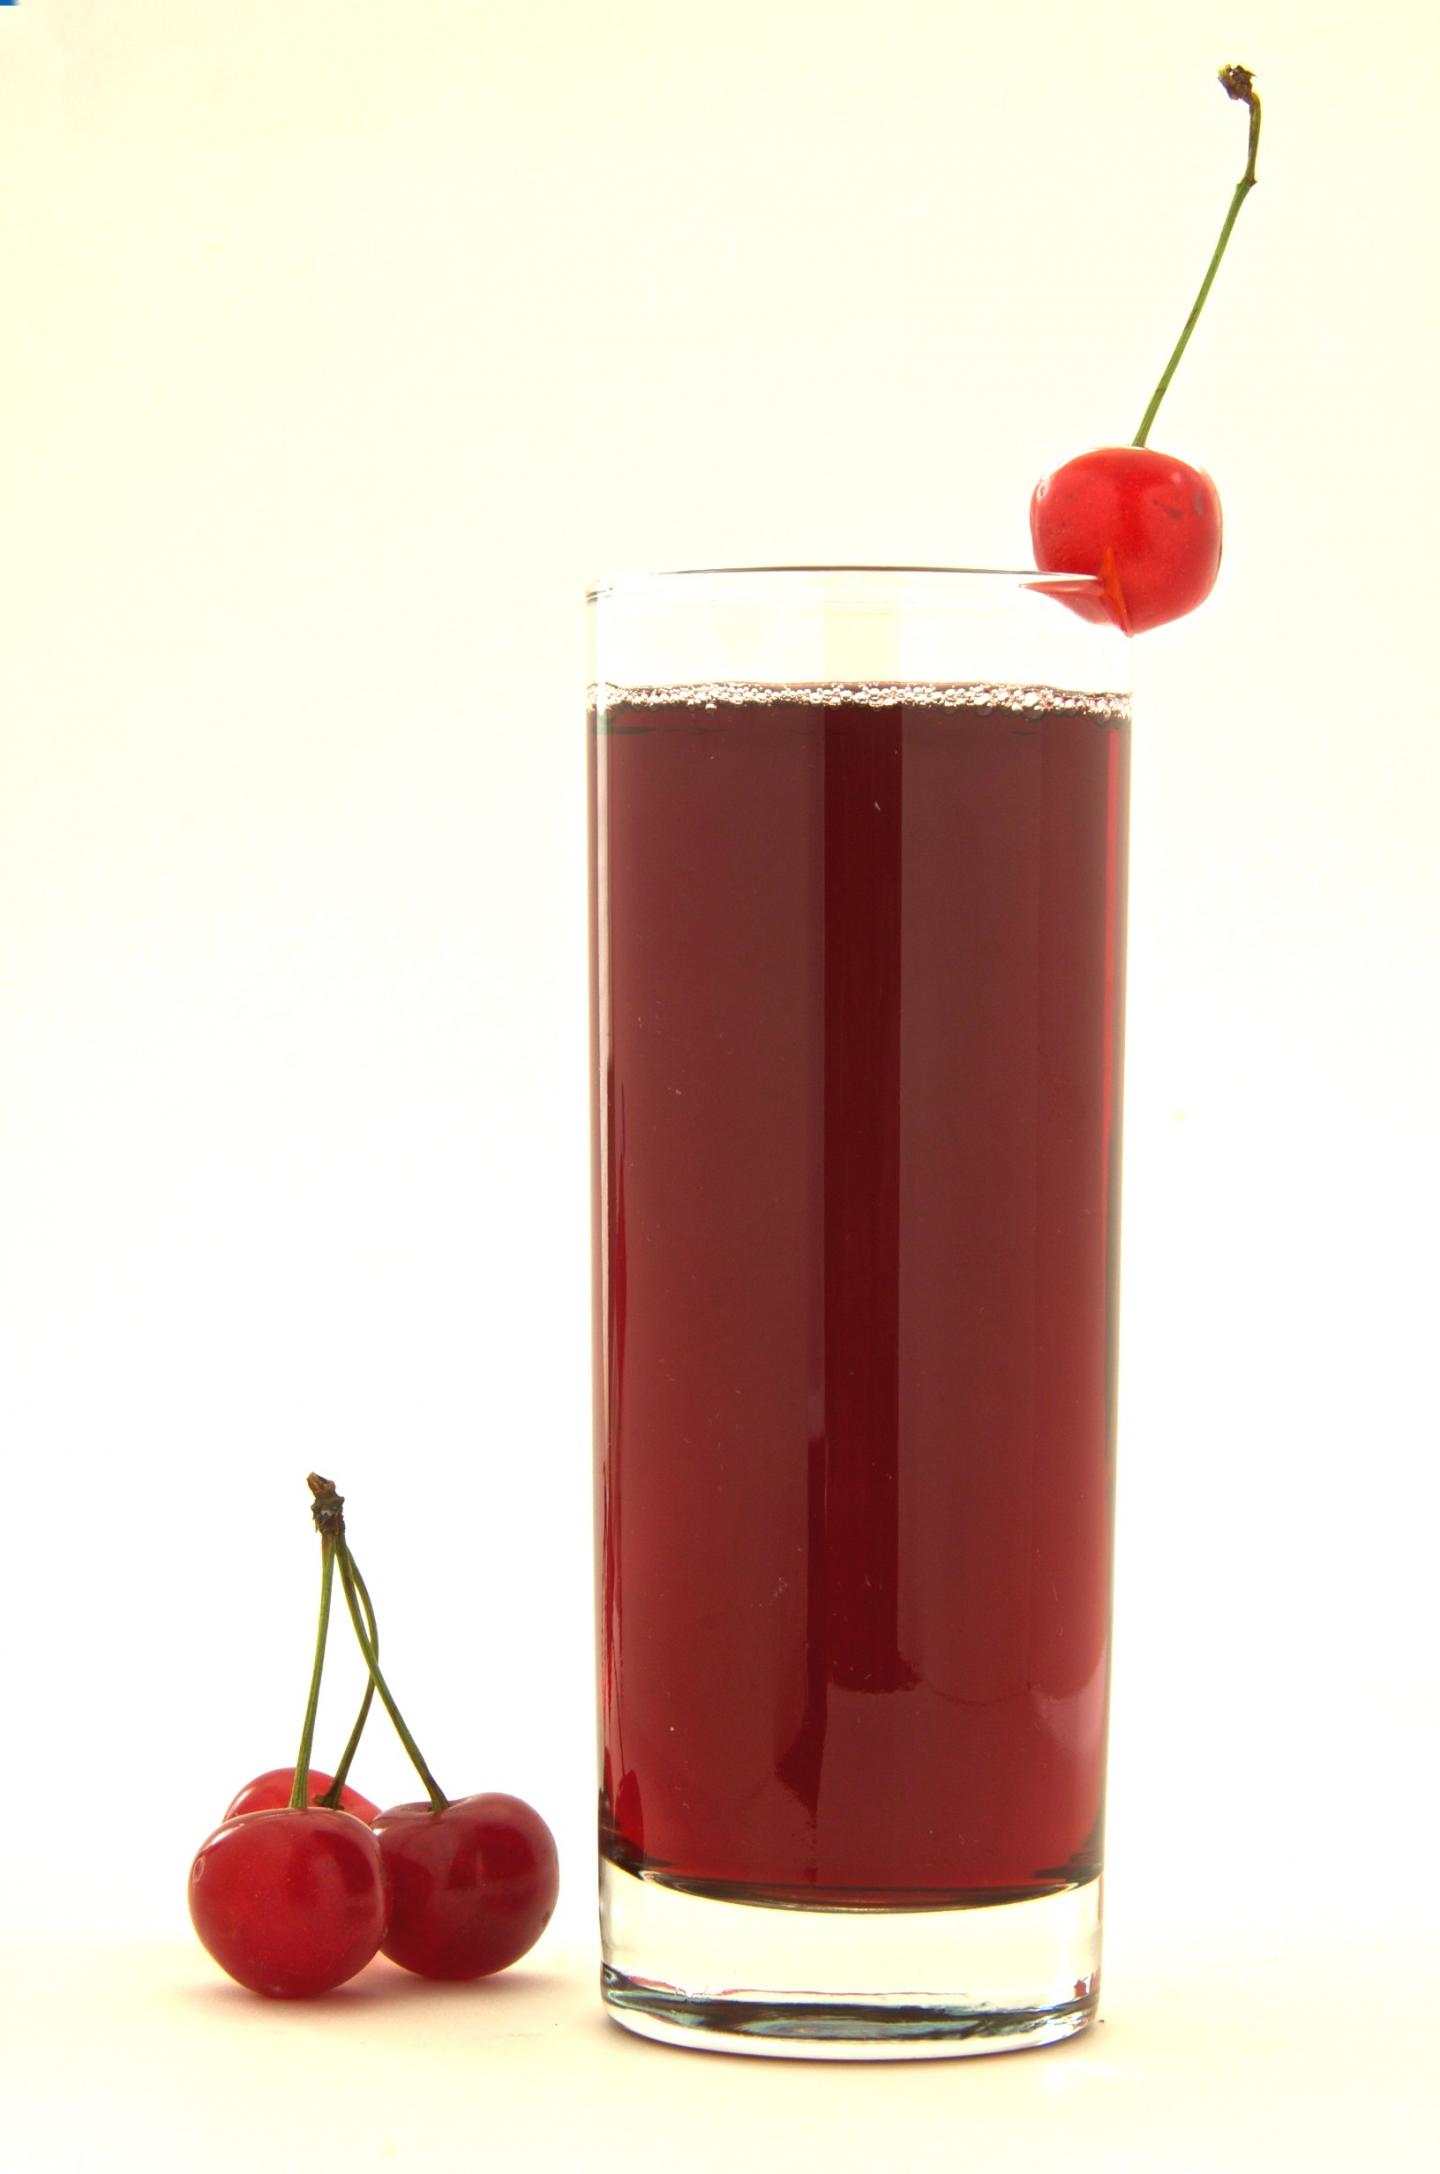 Tart Cherry Juice